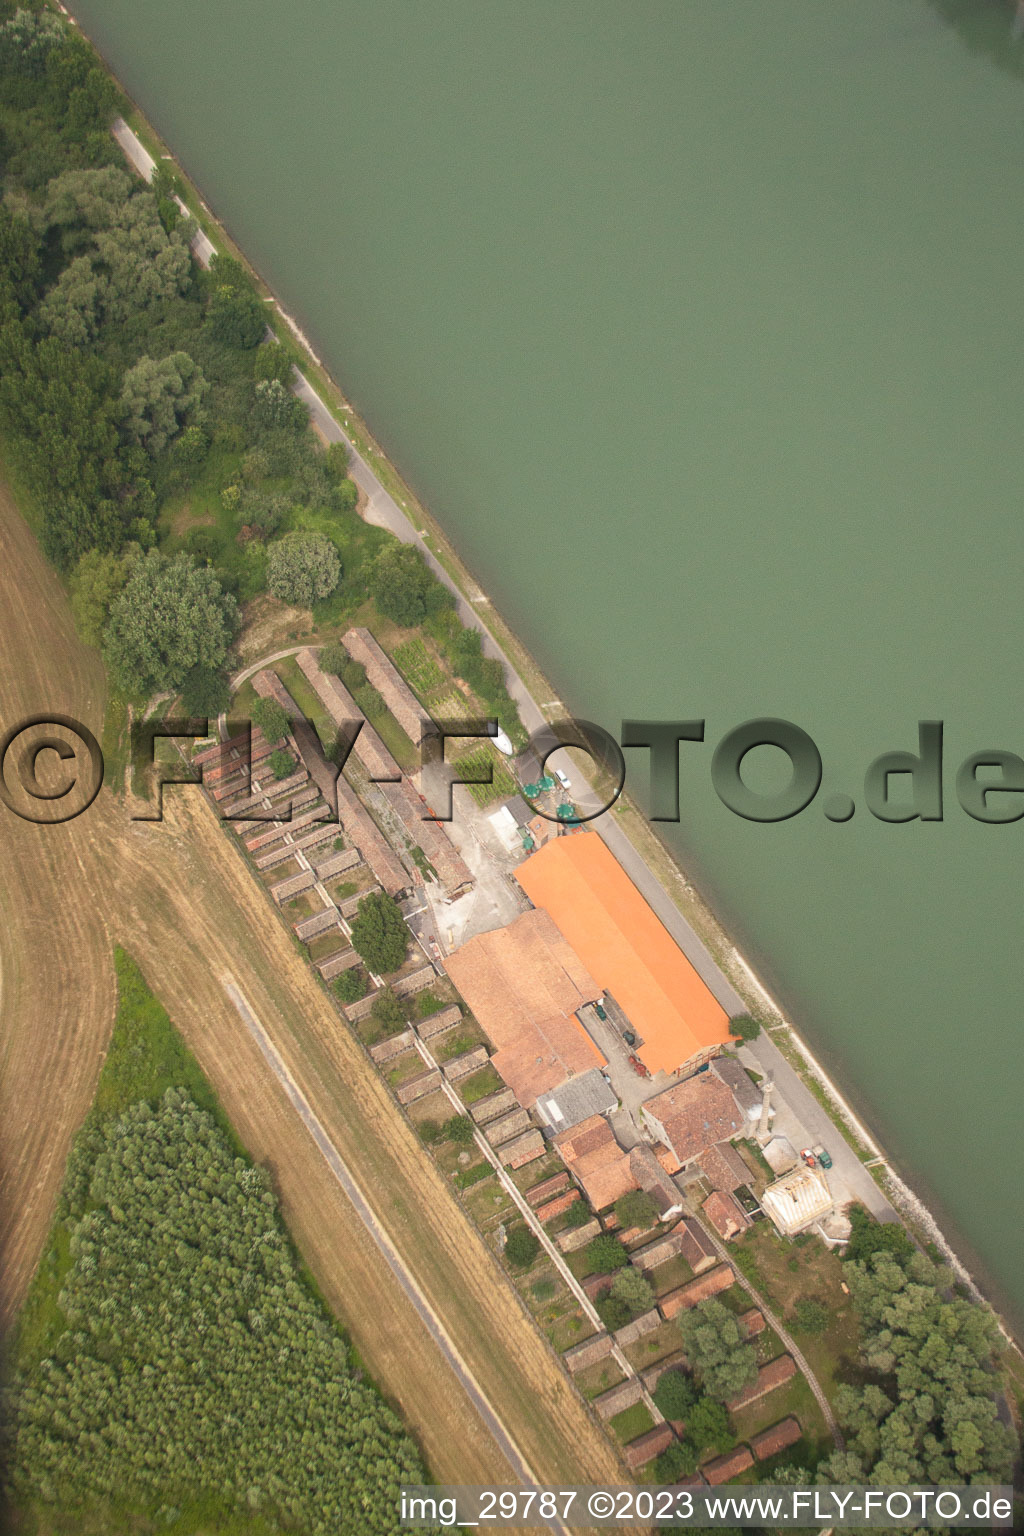 Vue aérienne de Vieille briqueterie à le quartier Sondernheim in Germersheim dans le département Rhénanie-Palatinat, Allemagne